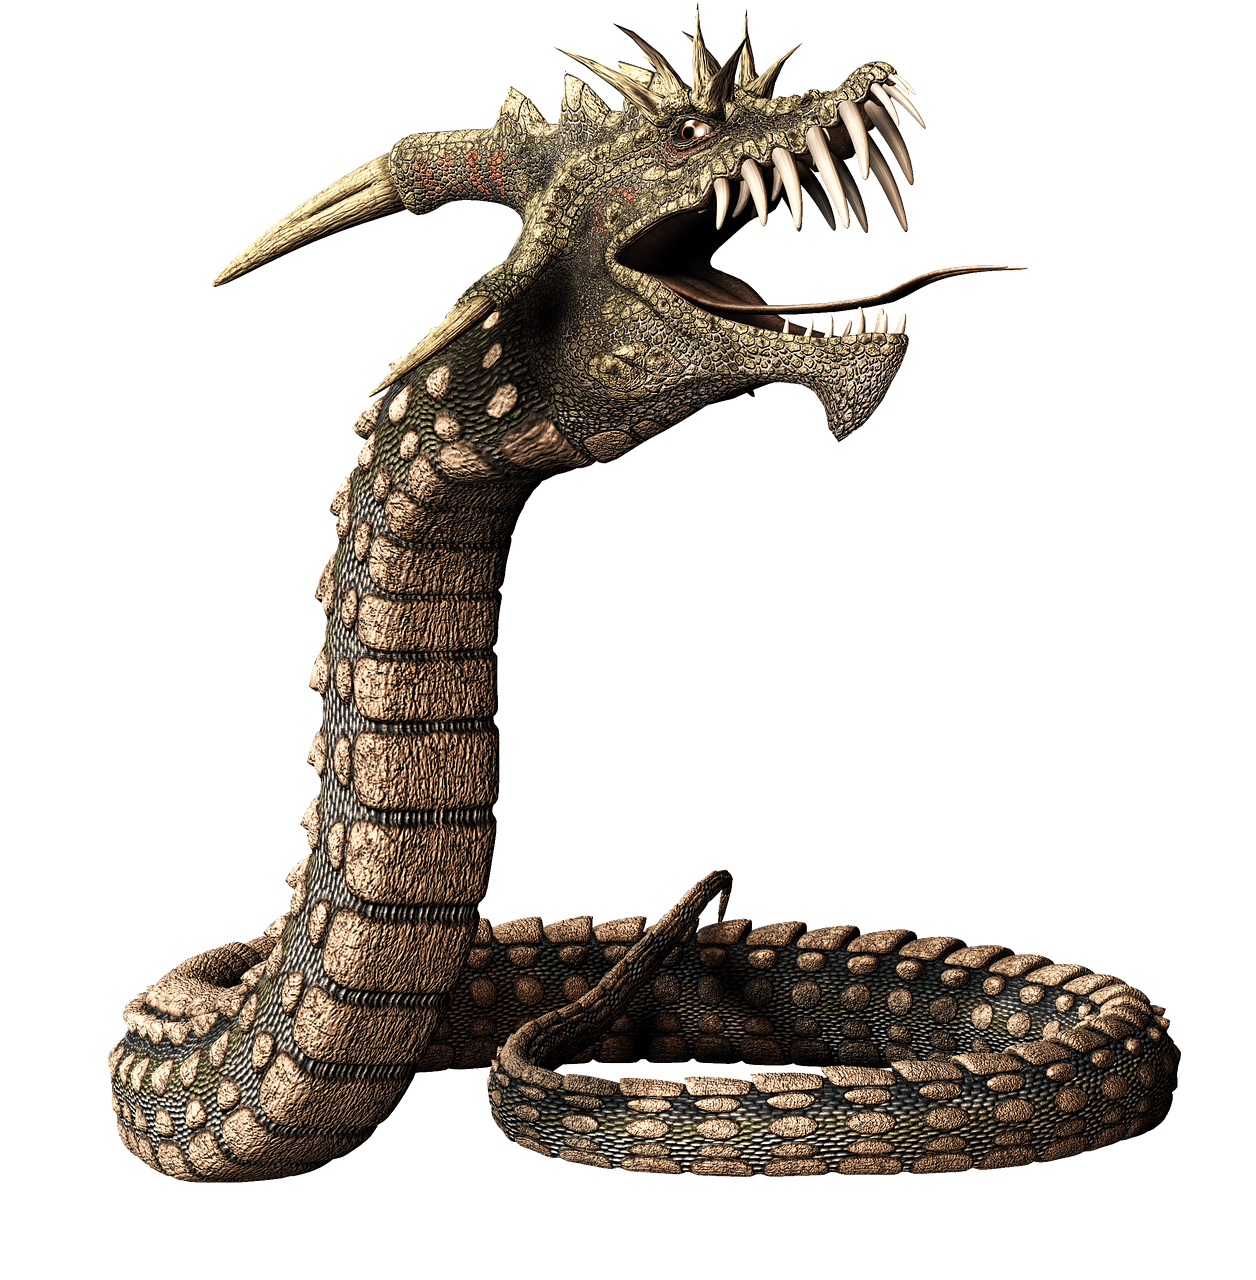 Imagen transparente PNG de serpiente